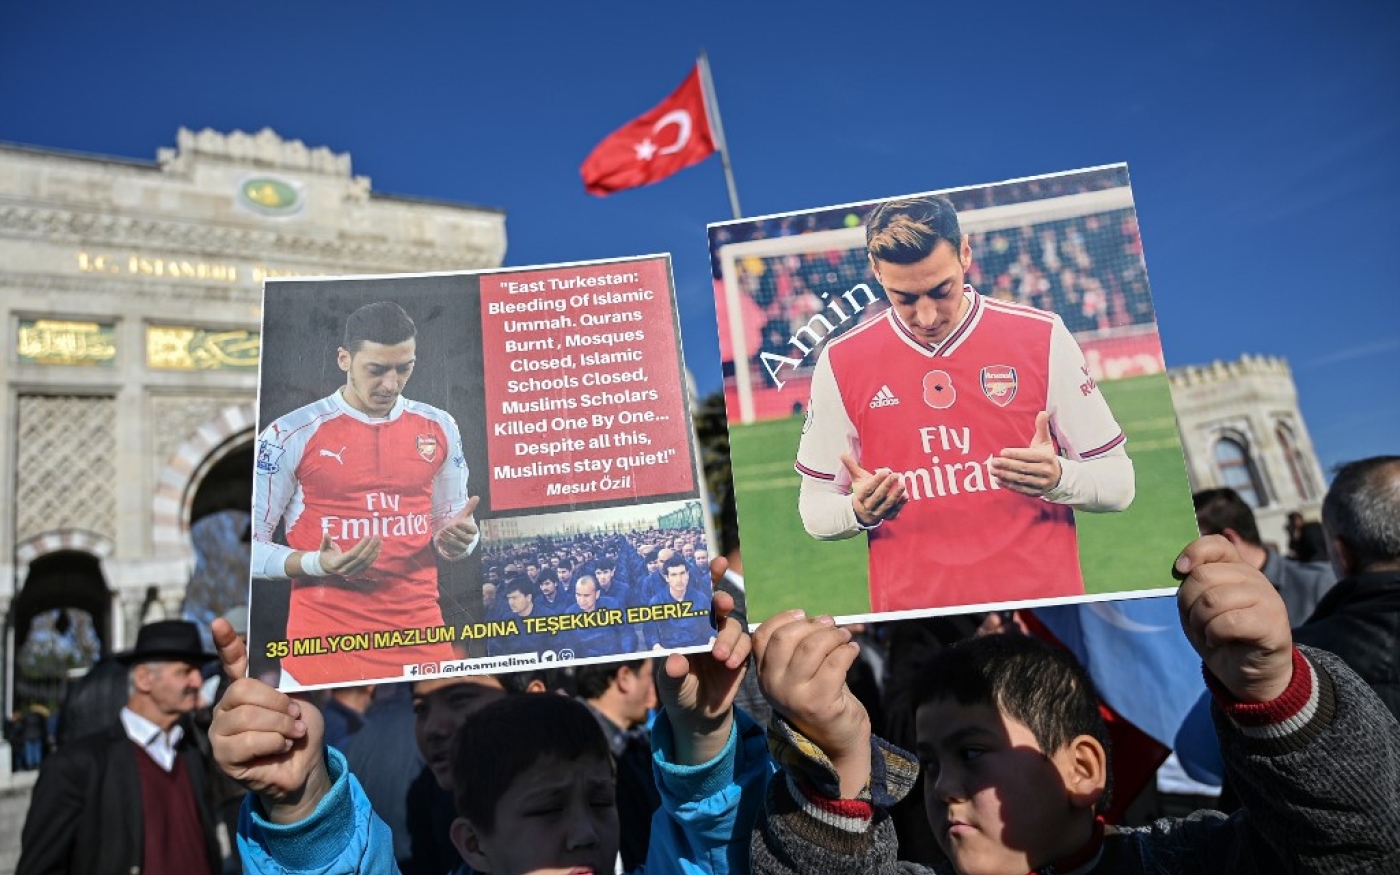 Des partisans de la minorité ouïghoure de Chine tiennent des pancartes de soutien à Özil lors d’une manifestation à Istanbul le 14 décembre 2019 (AFP)